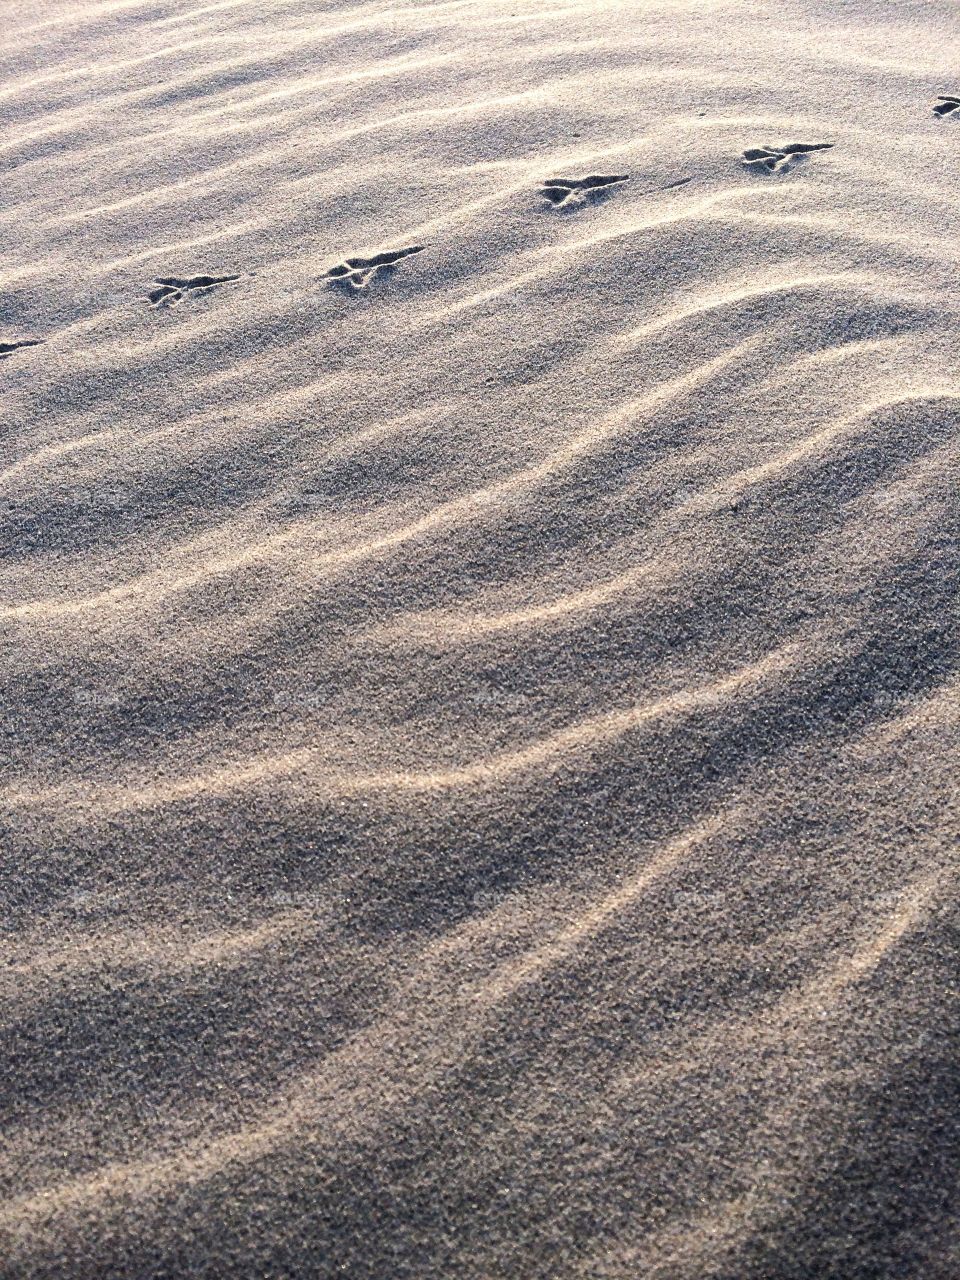 Footprints on sand waves.